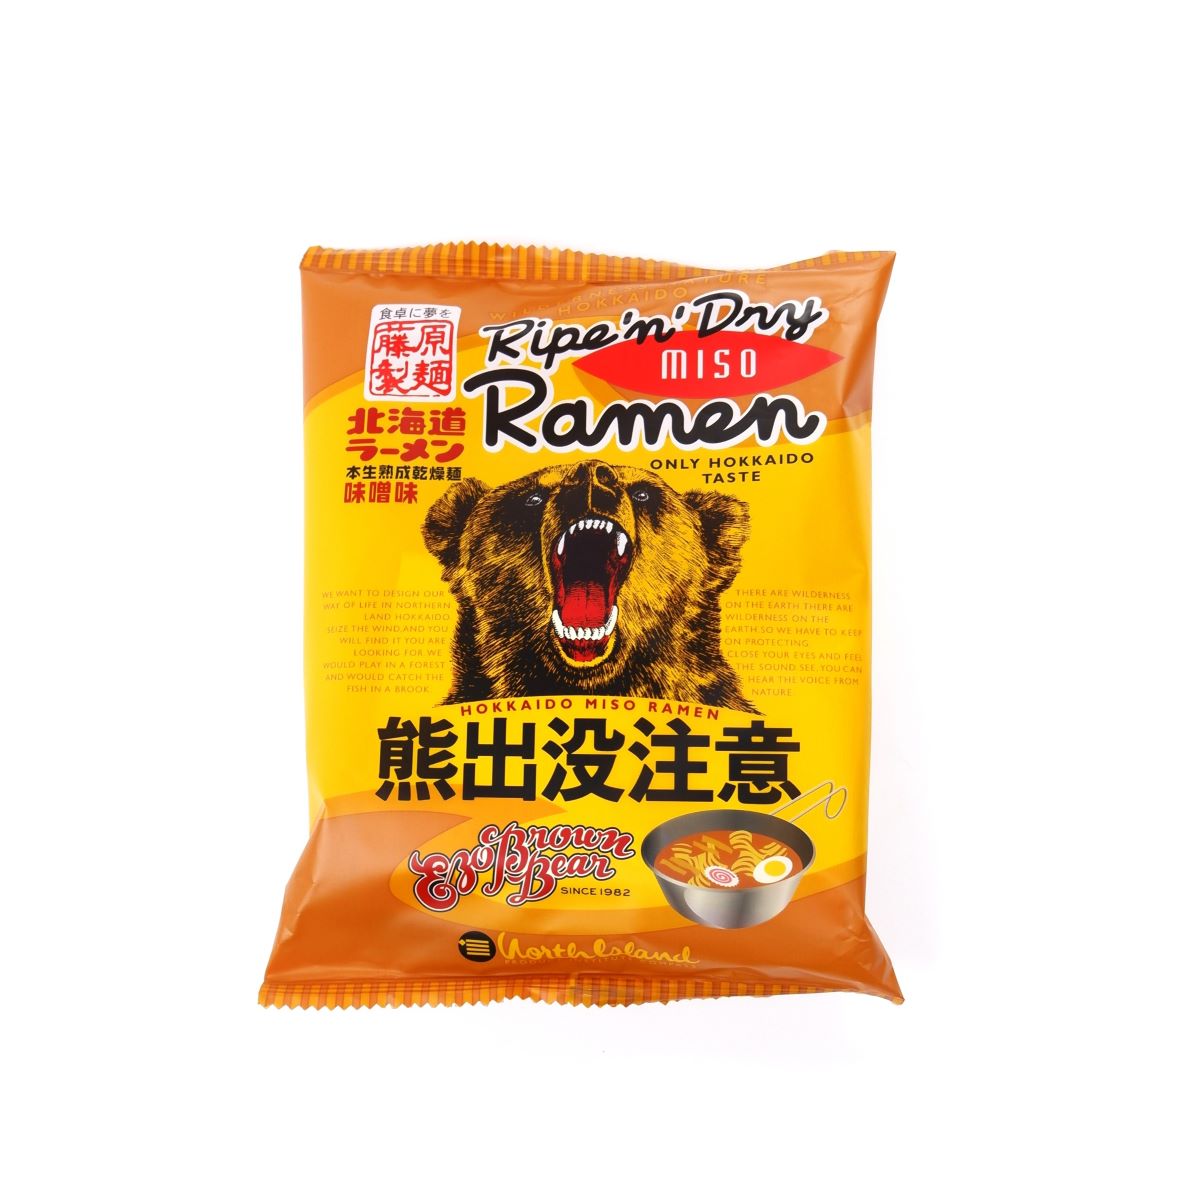 熊出沒注意味噌拉麵 乾燥拉麵 北海道 特產 拉麵 藤原製麵 日本必買 | 日本樂天熱銷